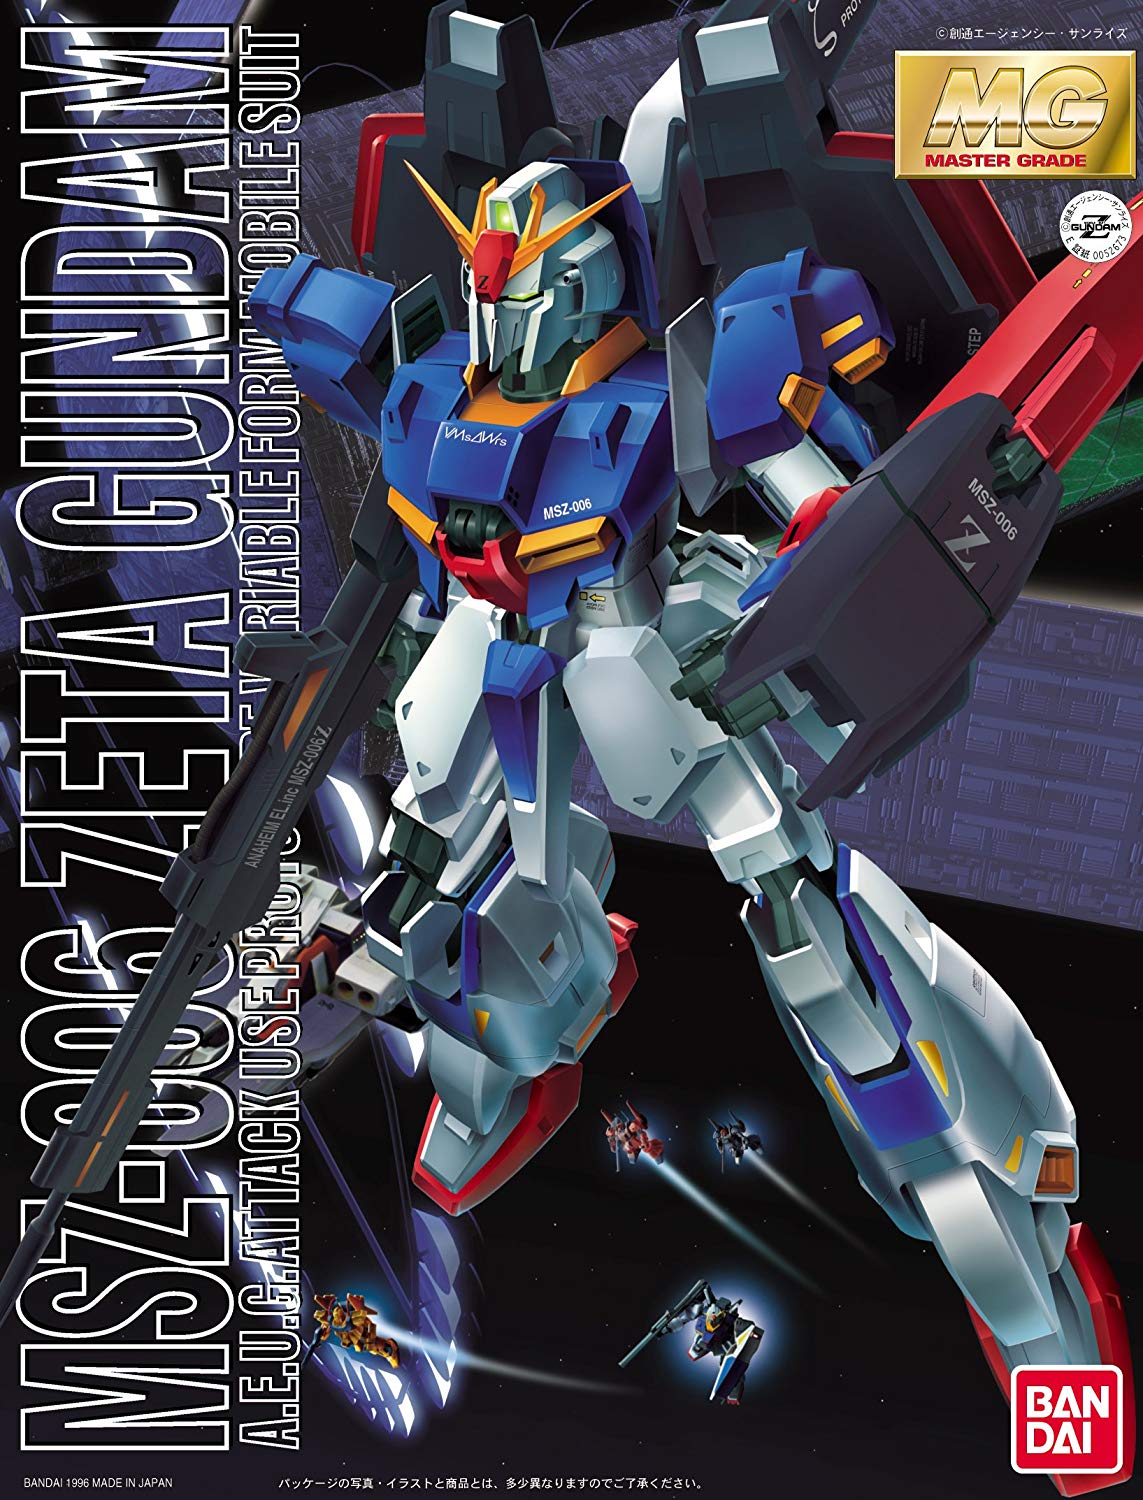 MG 1/100 MSZ-006 ゼータガンダム [Zeta Gundam]